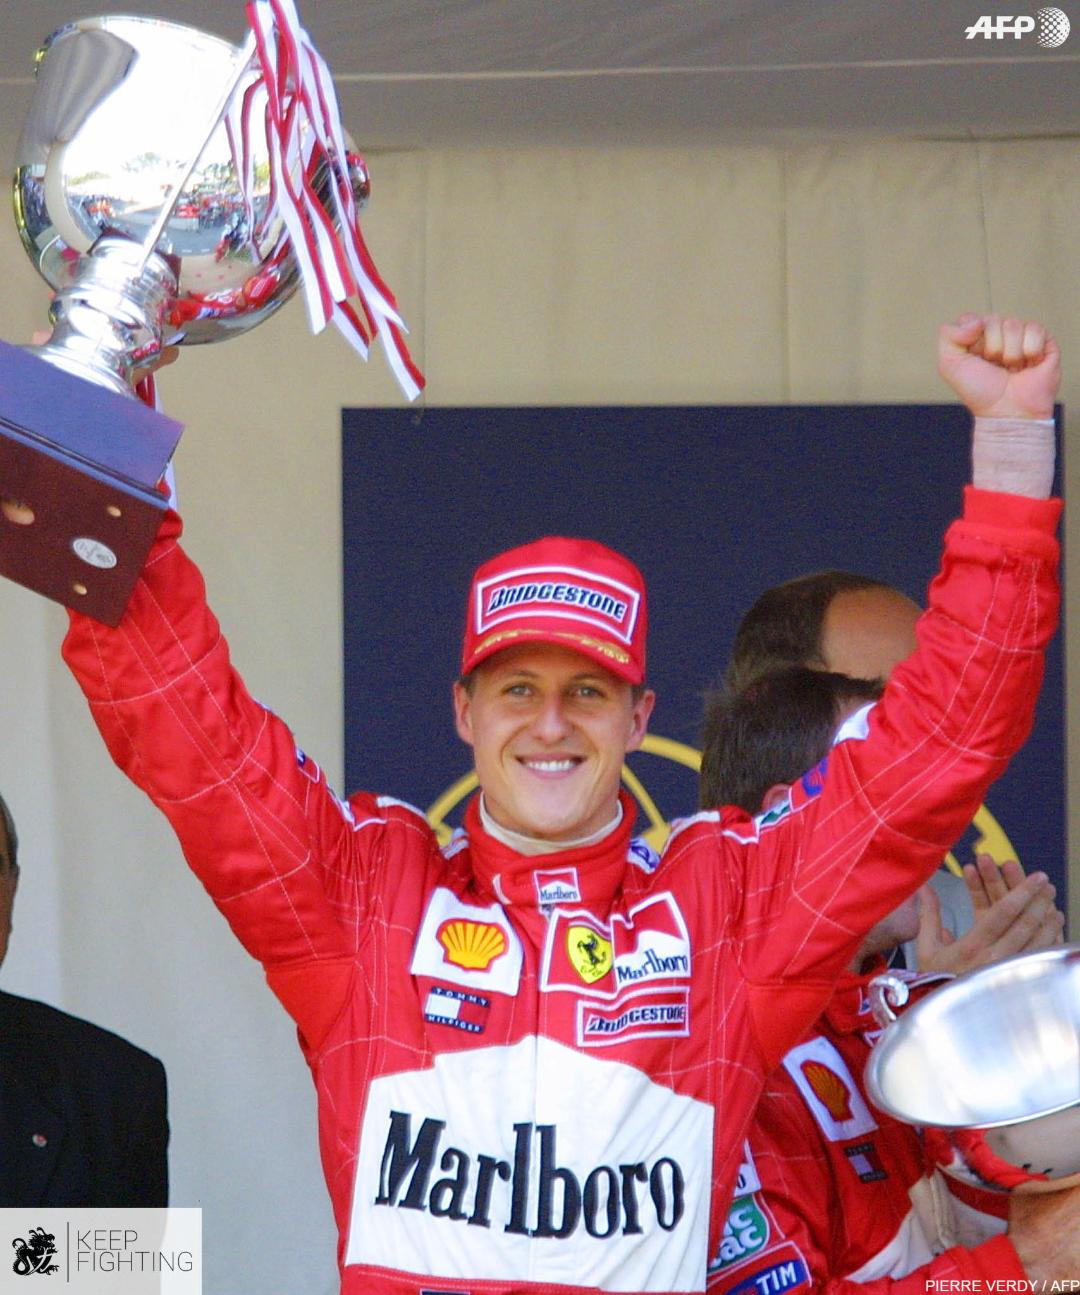 Vești despre Schumacher! ”Michael își urmărește fiul” atunci când concurează la Formula 1!